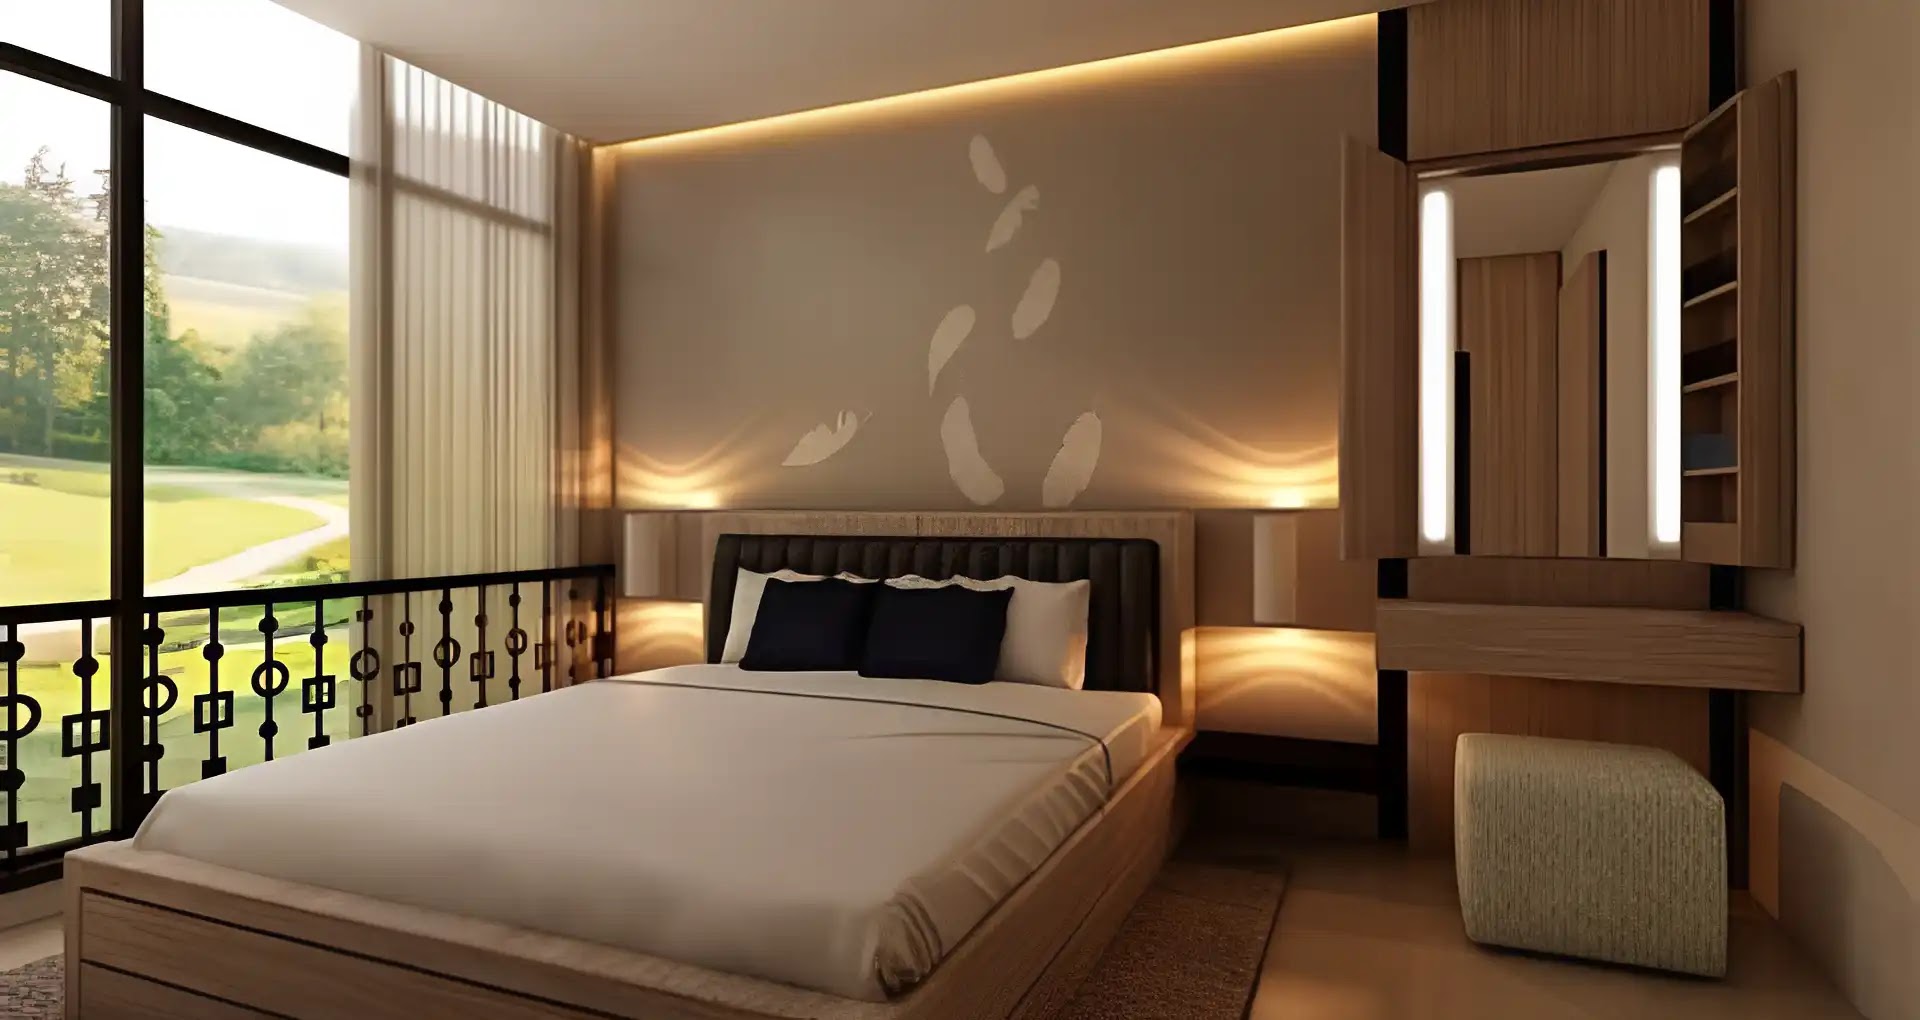 Desain Kamar Tidur Minimalis dengan Lampu LED